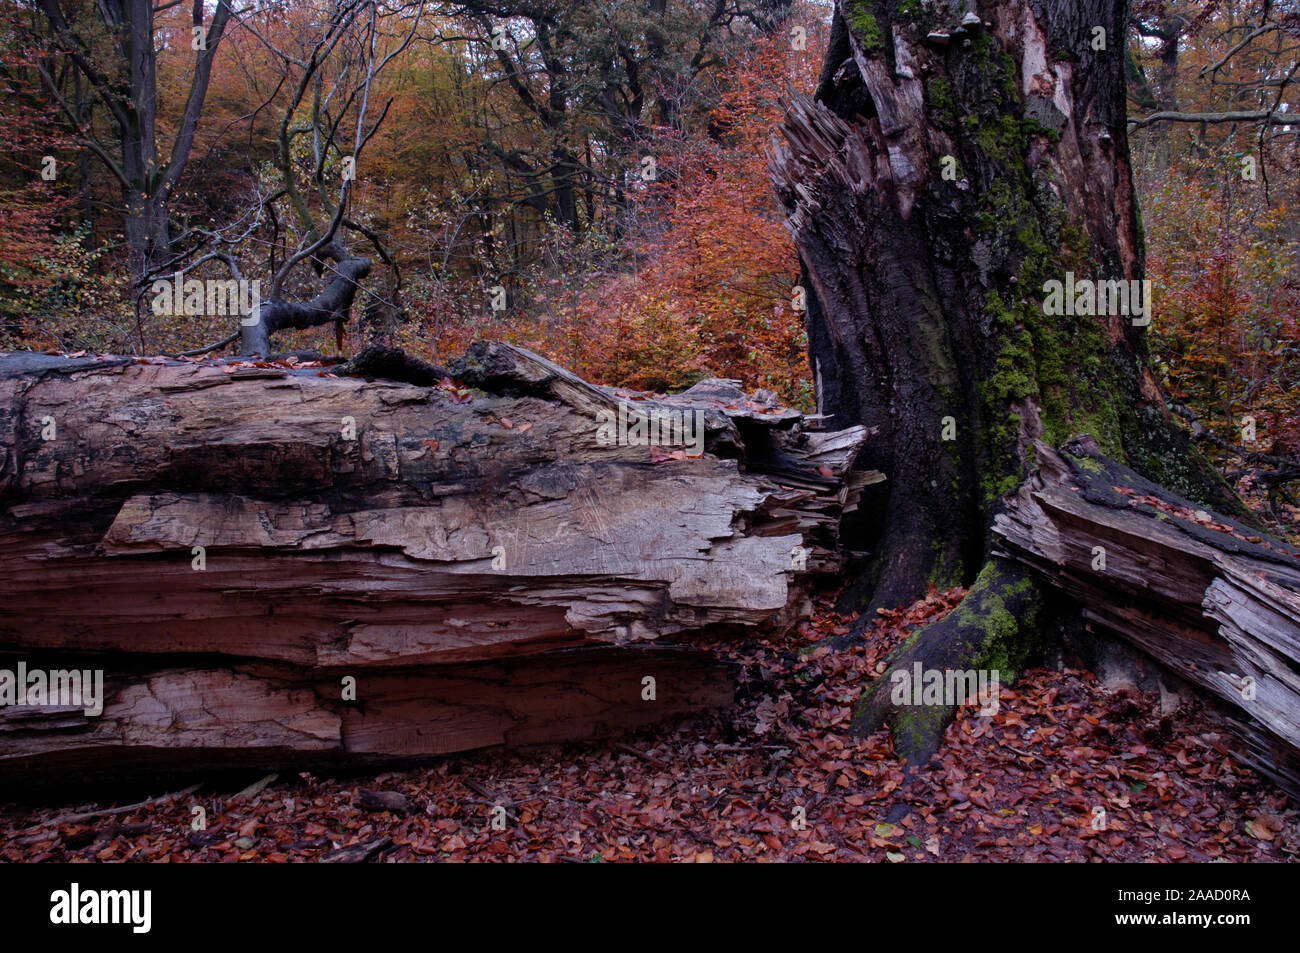 Toter Baum im Urwald Sababurg, Hessen, Deutschland/(Fagus sylvatica)/Totholz im Urwald Sababurg Reinhardswald, Hessen, Deutschland Stockfoto